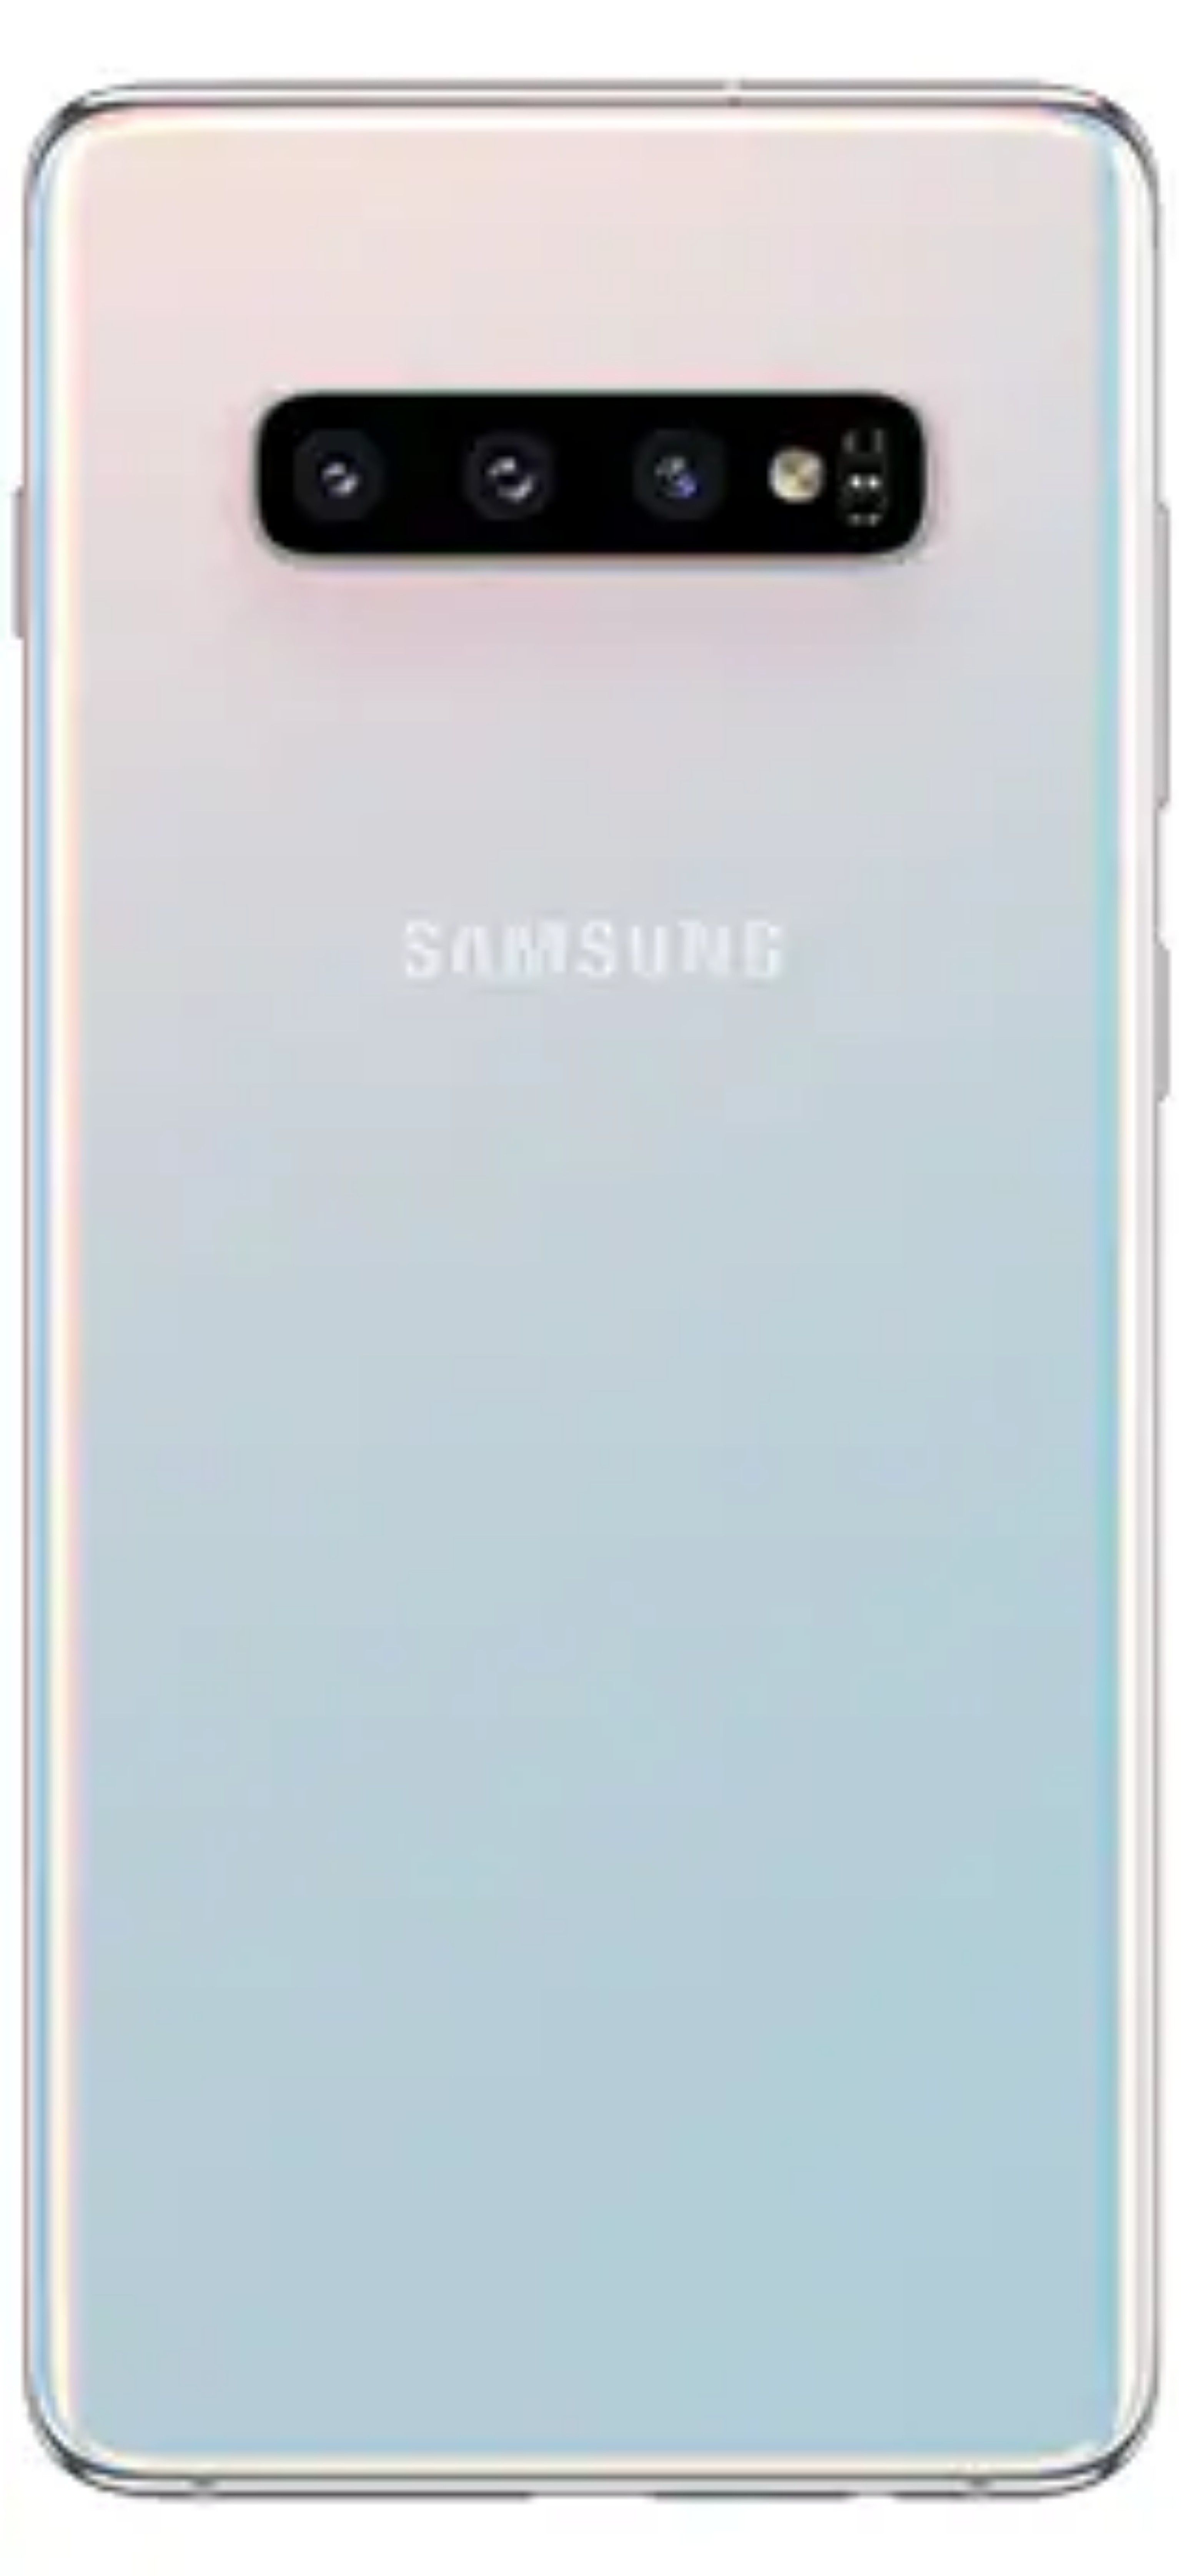 Samsung Galaxy S10.*/